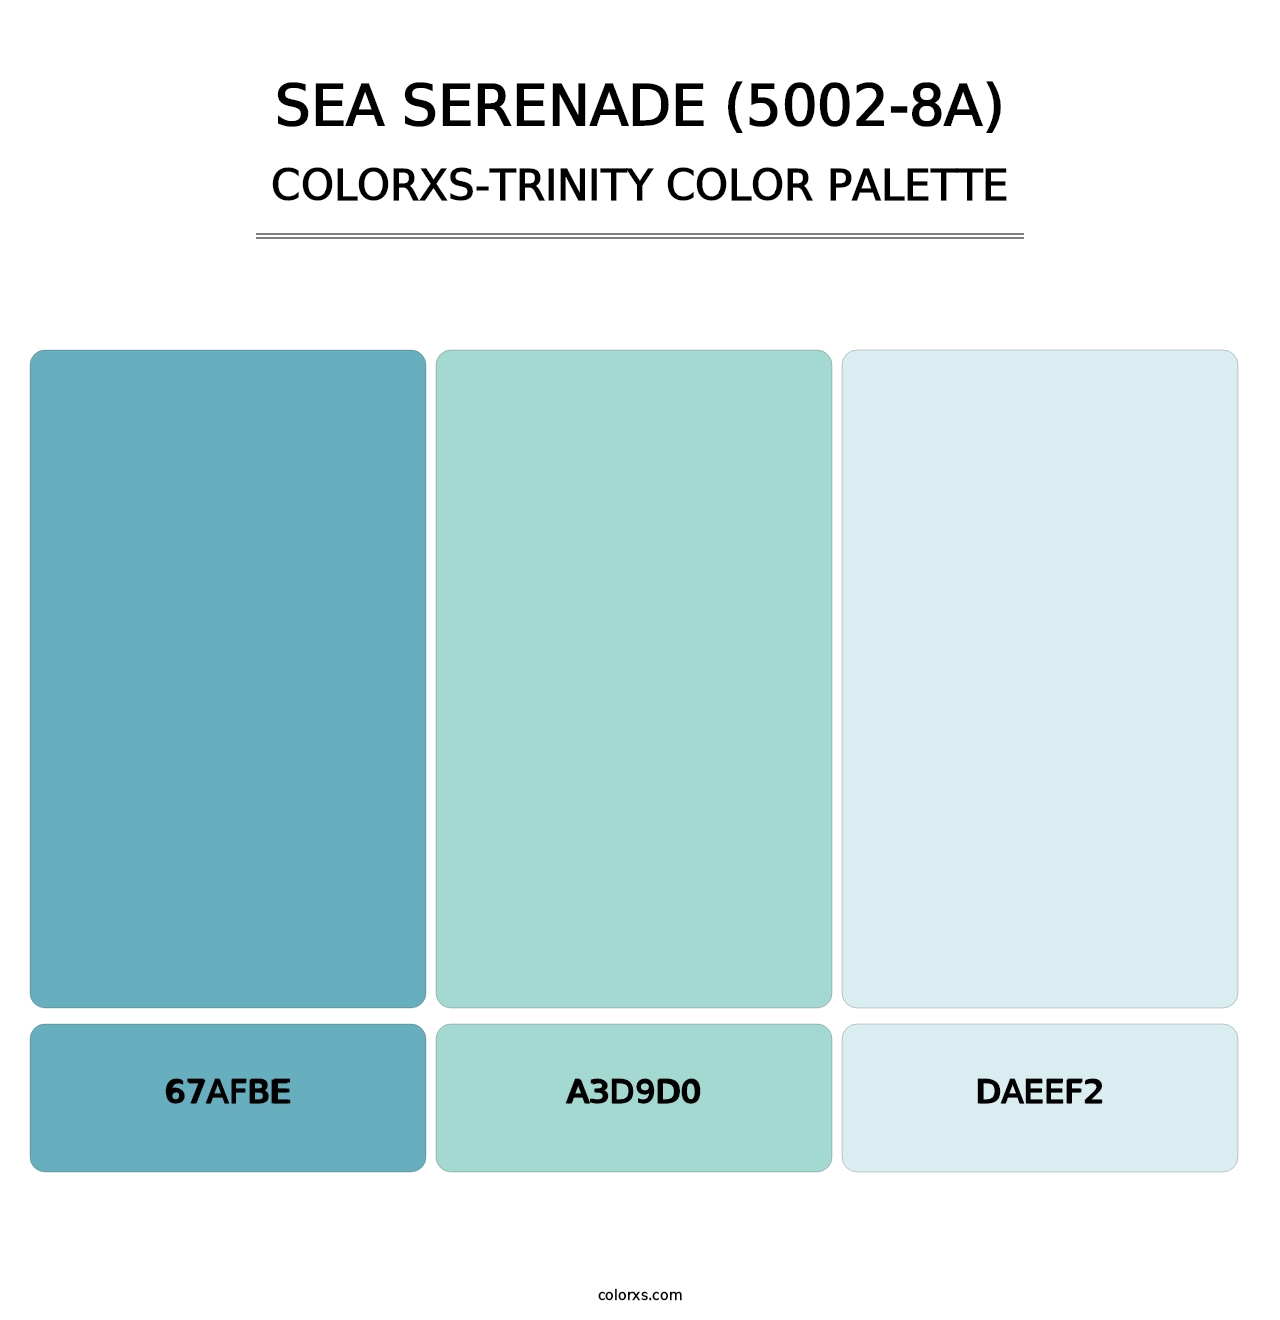 Sea Serenade (5002-8A) - Colorxs Trinity Palette